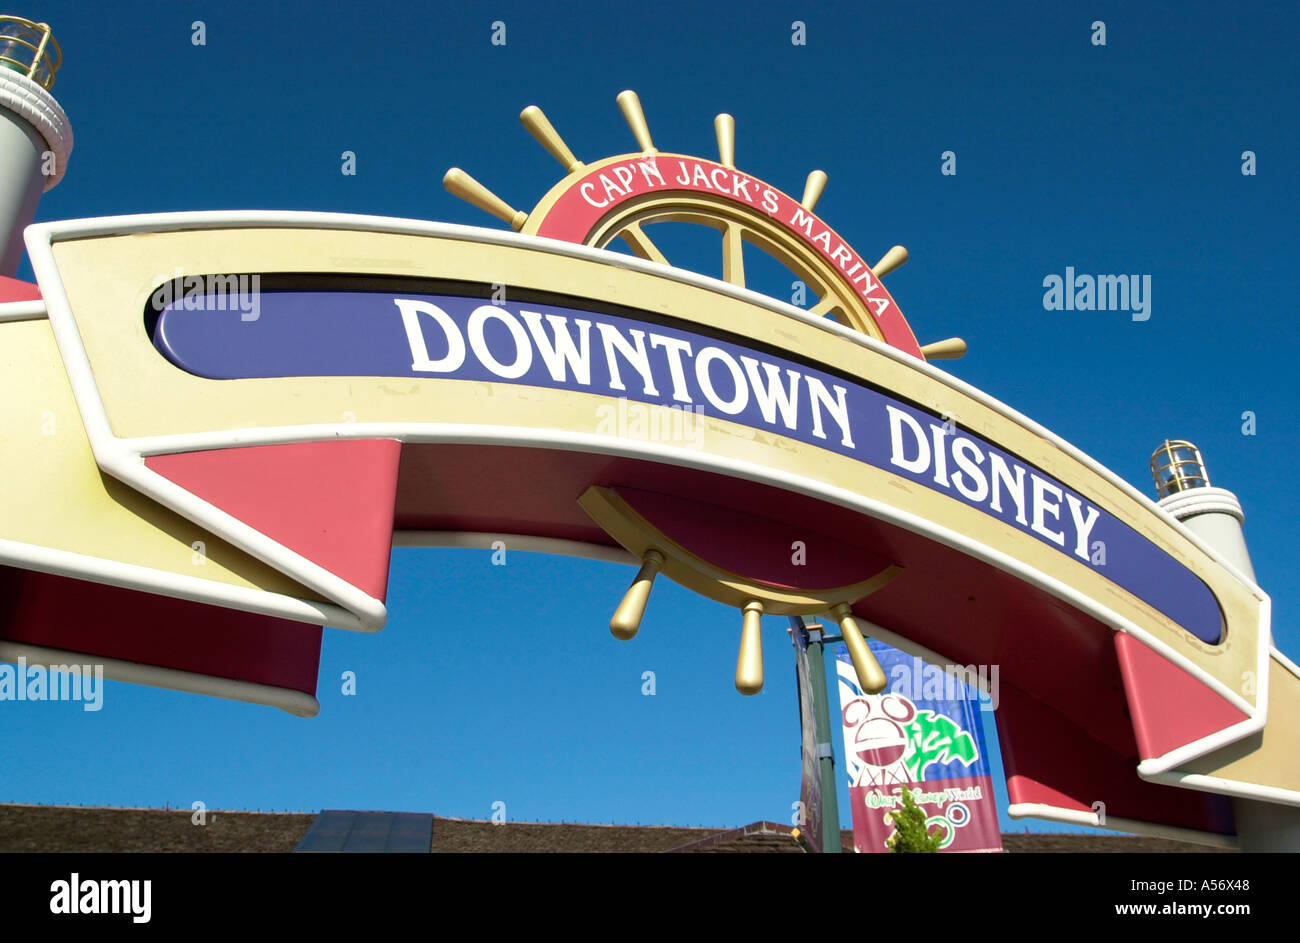 Downtown Disney entrance sisgn, Lake Buena Vista, Orlando, Florida, USA Stock Photo